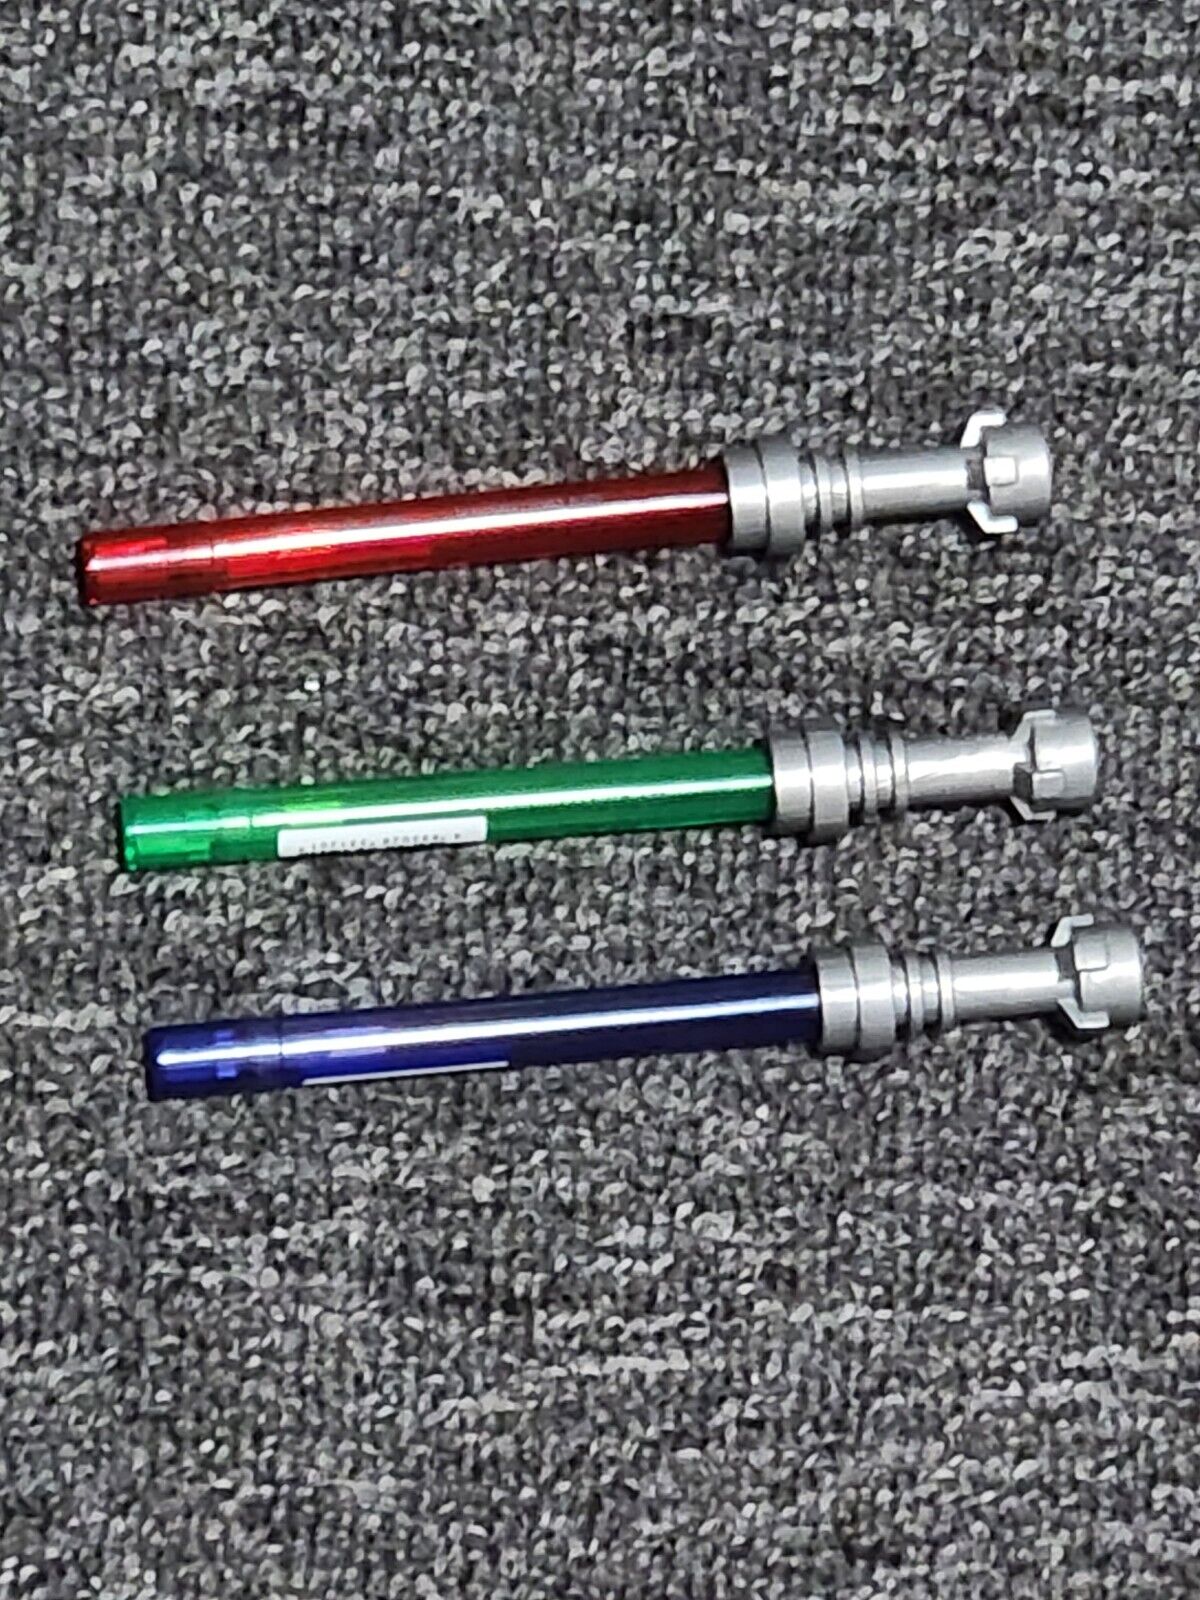 Lego Star Wars Lightsaber Pens Set Of 3